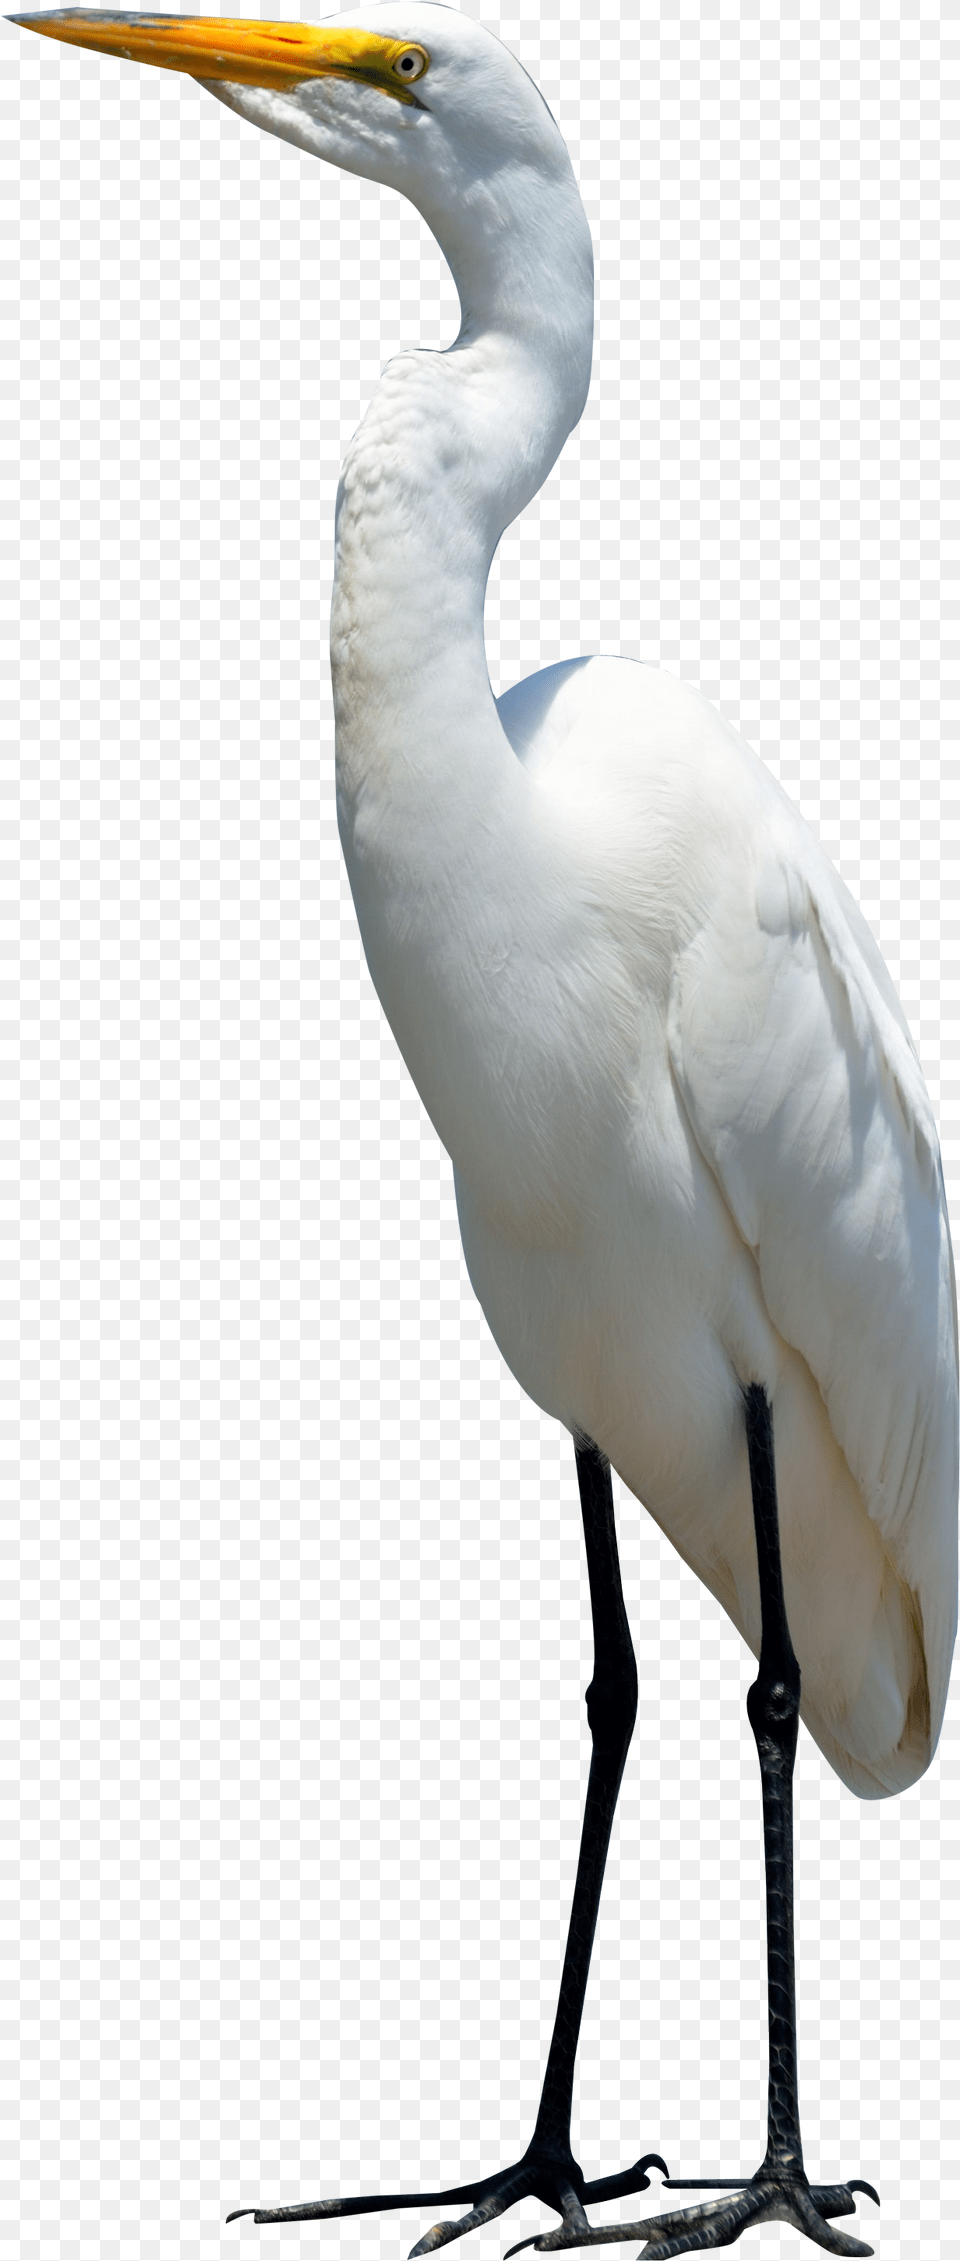 Egret Bird Image Bird, Animal, Waterfowl, Crane Bird, Heron Free Png Download